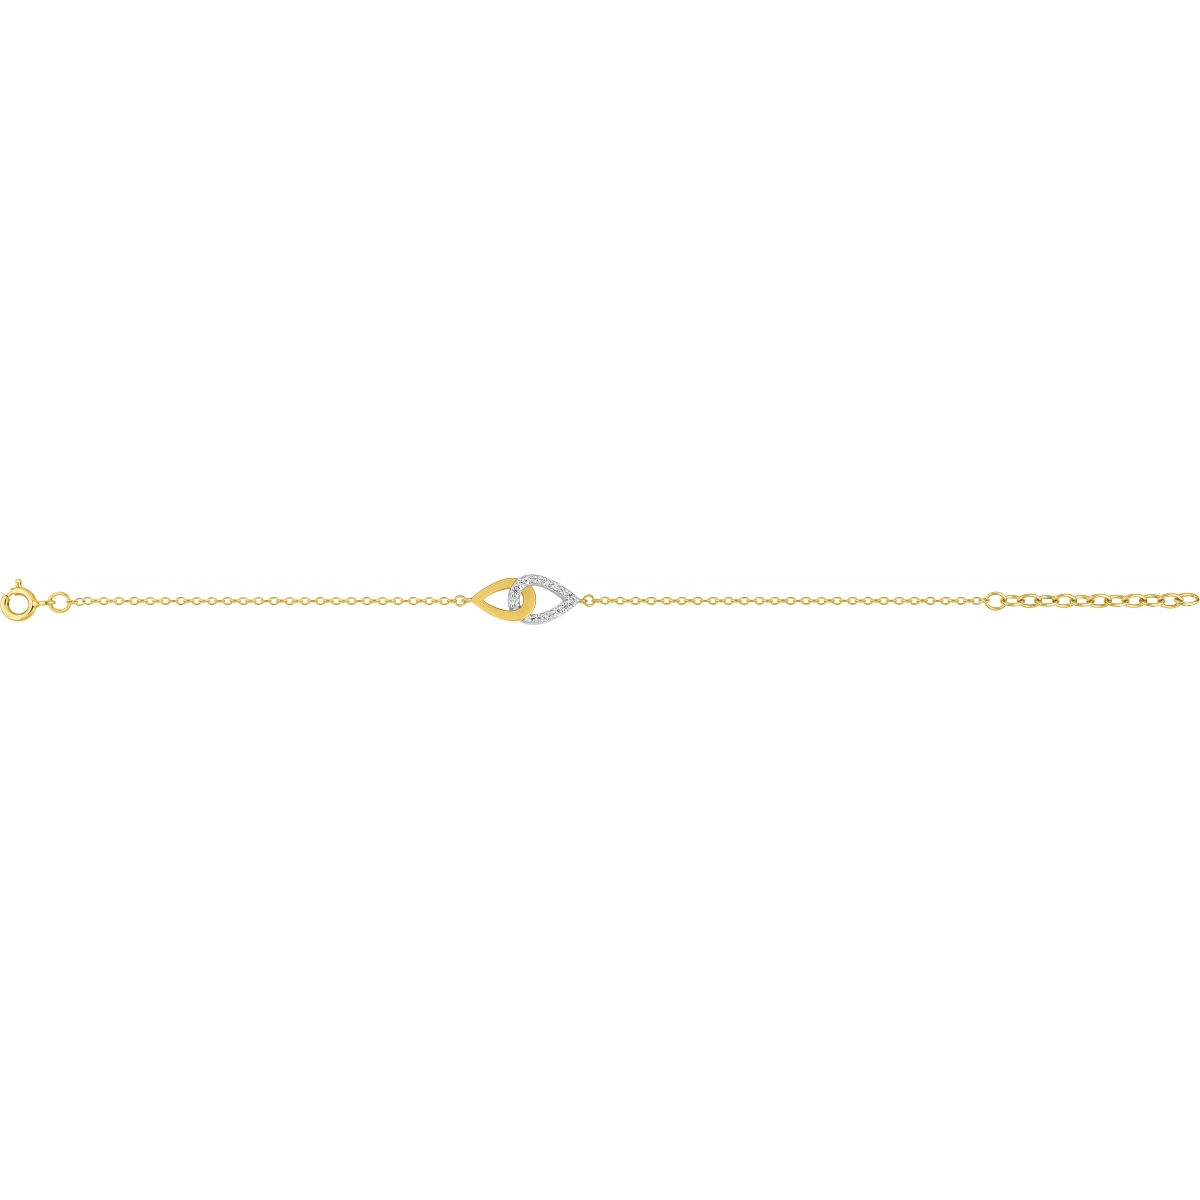 Pulseira 18cm com Zircônia cúbica banhado a ouro bicolor BSBL53Z18 Lua blanca BSBL53Z18.0